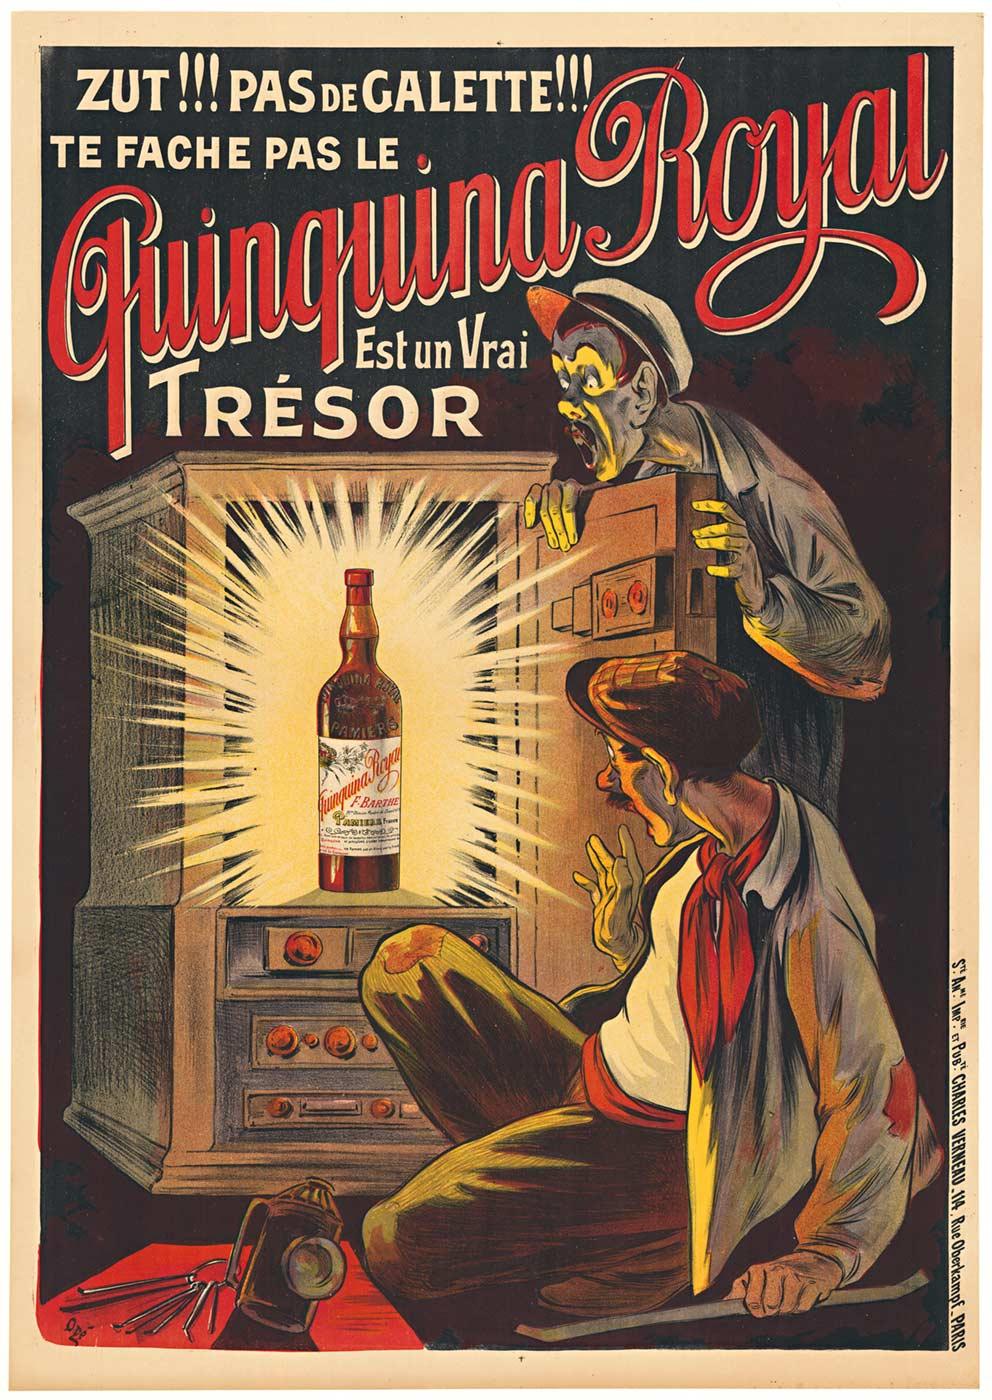 Original Quinquina Royal Est un vrai trésor vintage liquor poster  c.1902